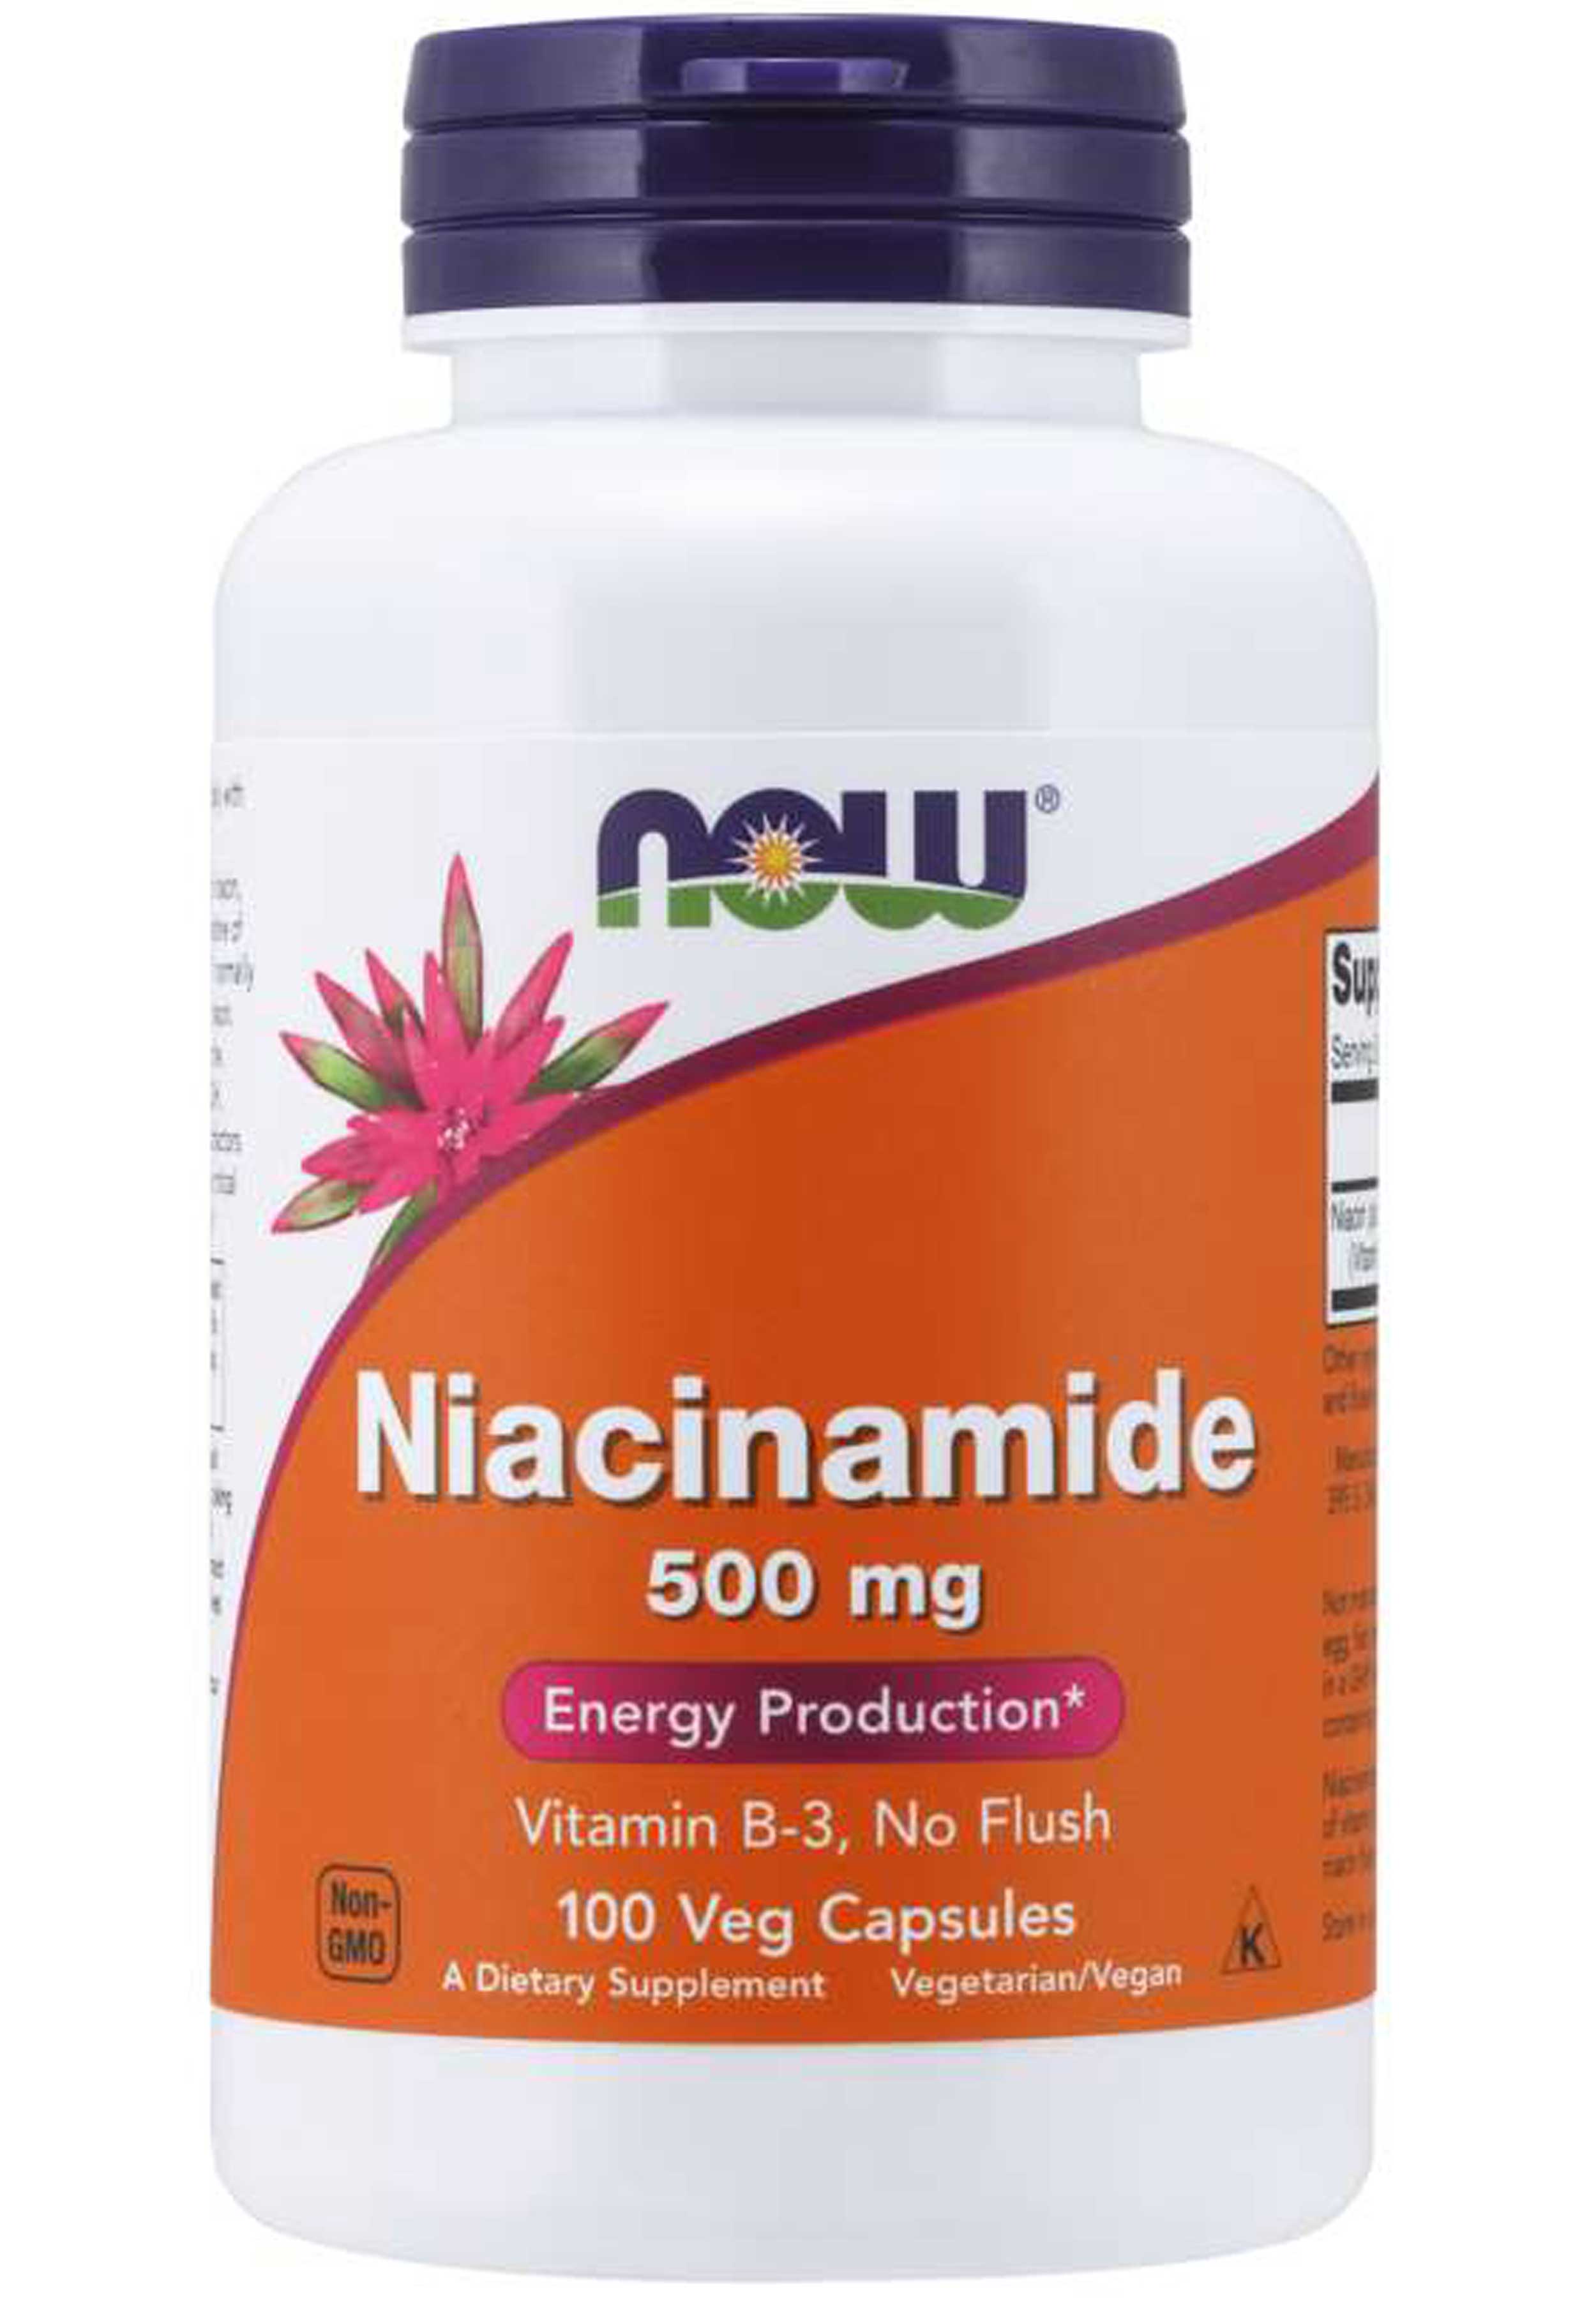 NOW Niacinamide 500 mg